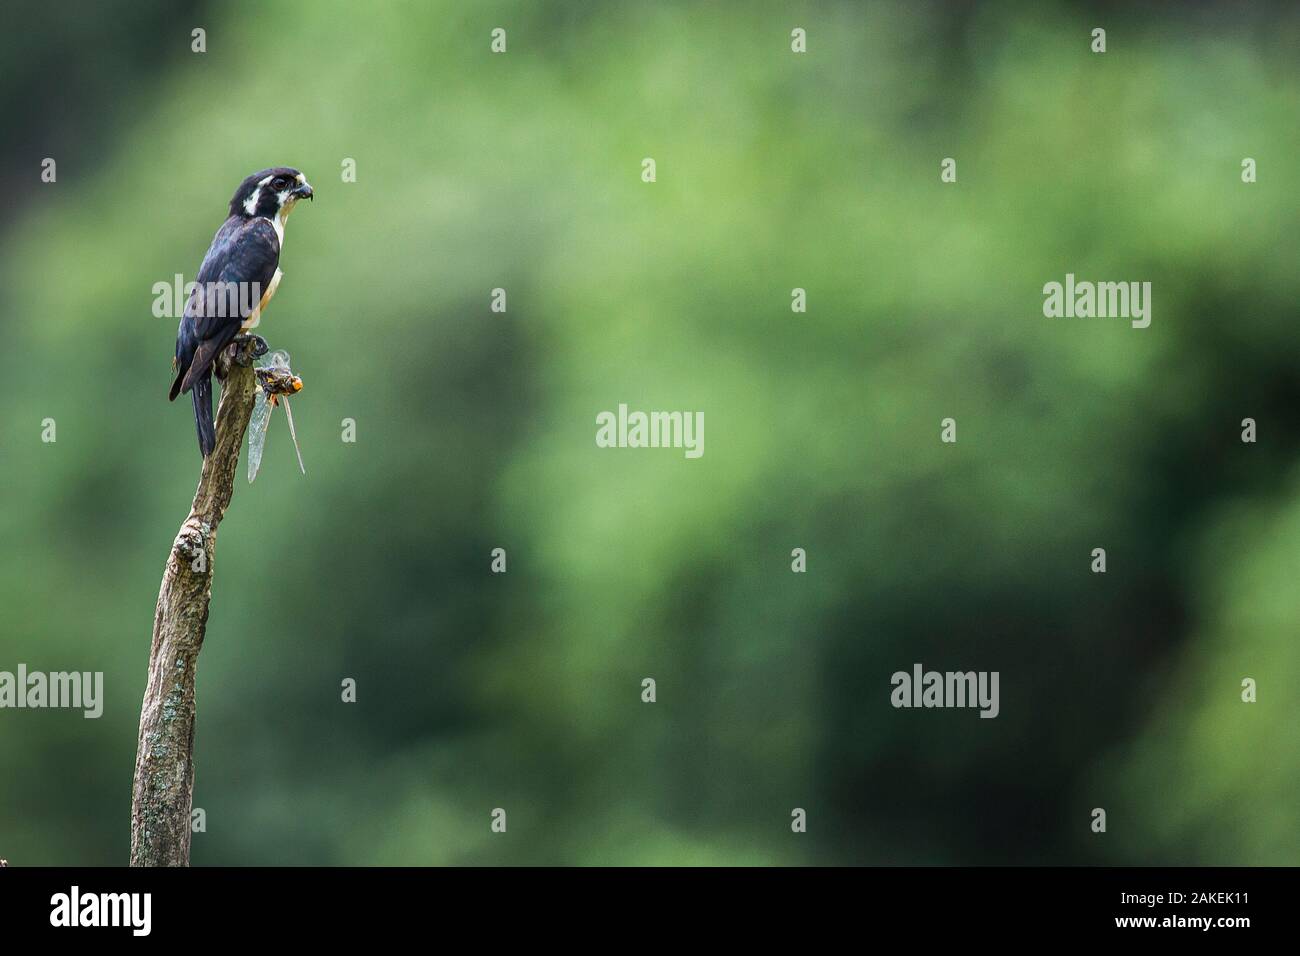 Black-thighed falconet (Microhierax fringillarius) mâle, la Malaisie. Libellule avec ses proies. Le plus petit oiseau de proie, de la taille d'un moineau. Banque D'Images